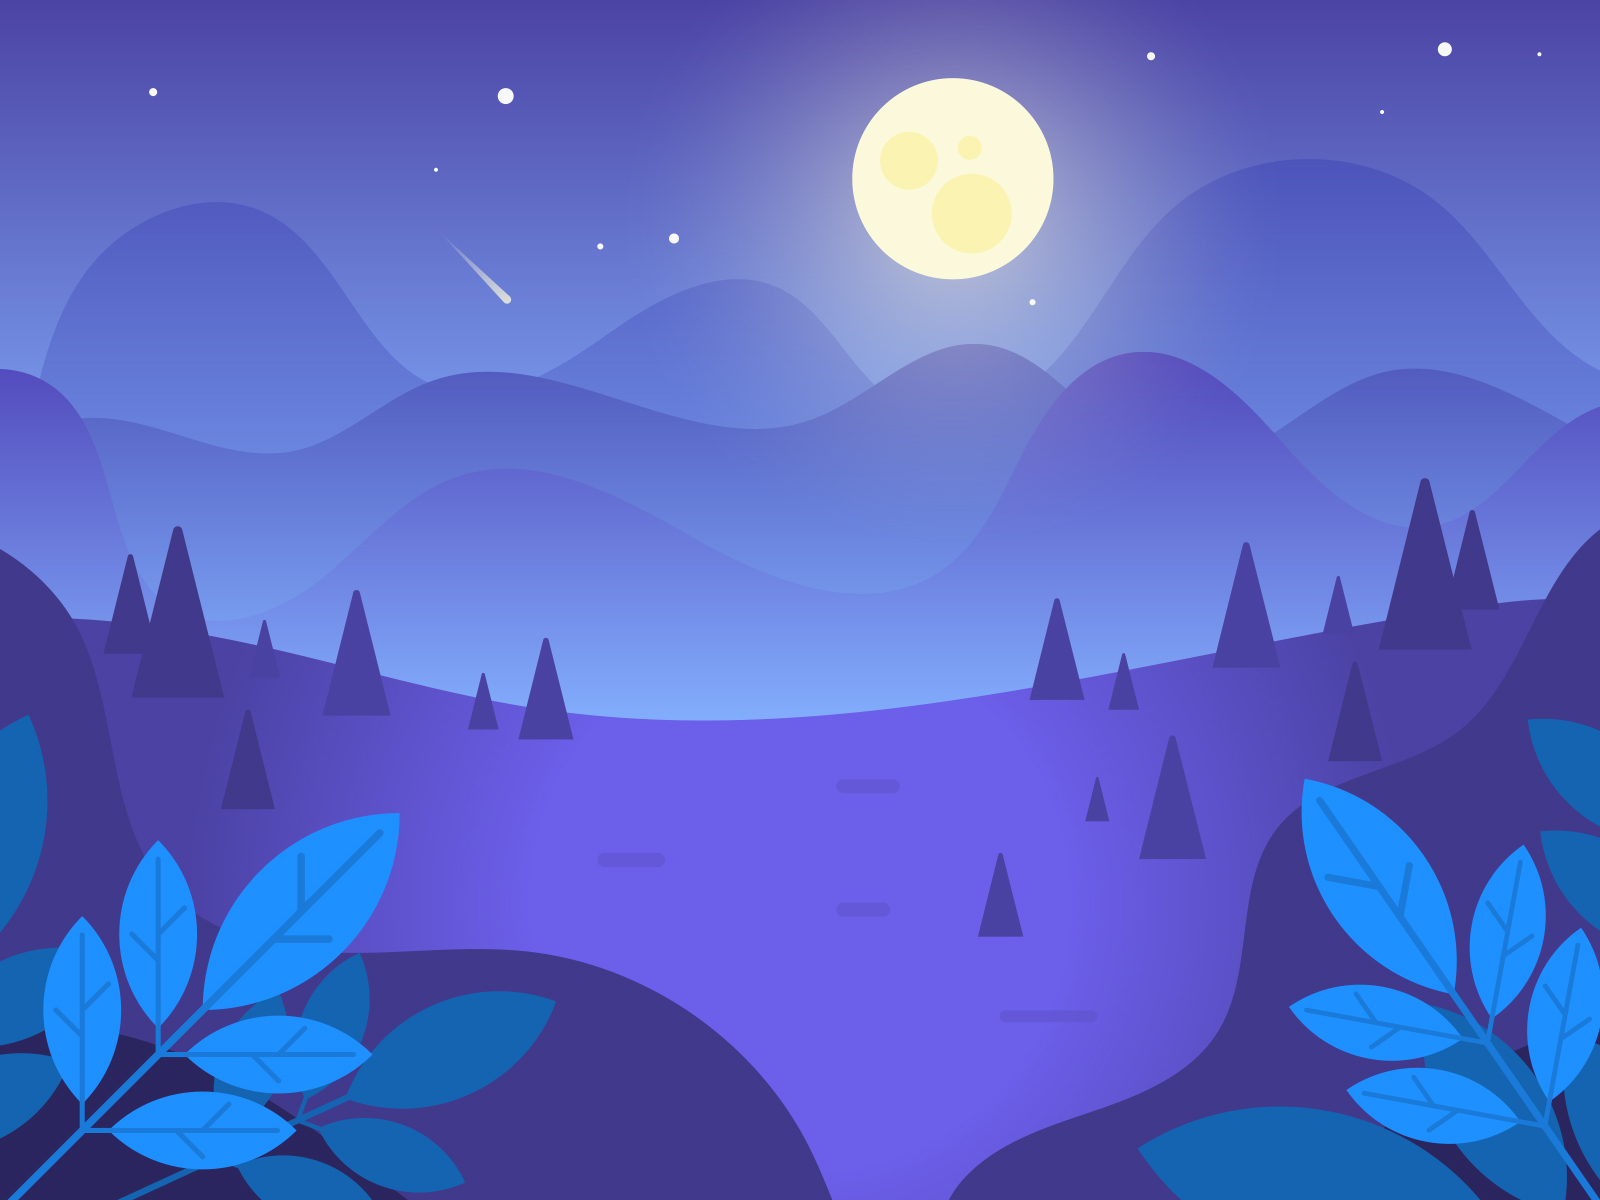 Cảm nhận cảnh đẹp trong rừng đêm với thiết kế nền vector này. Hình vẽ phản ánh cảm giác bình yên và đưa bạn đến những khung cảnh tuyệt vời. Nhấn vào để xem chi tiết!